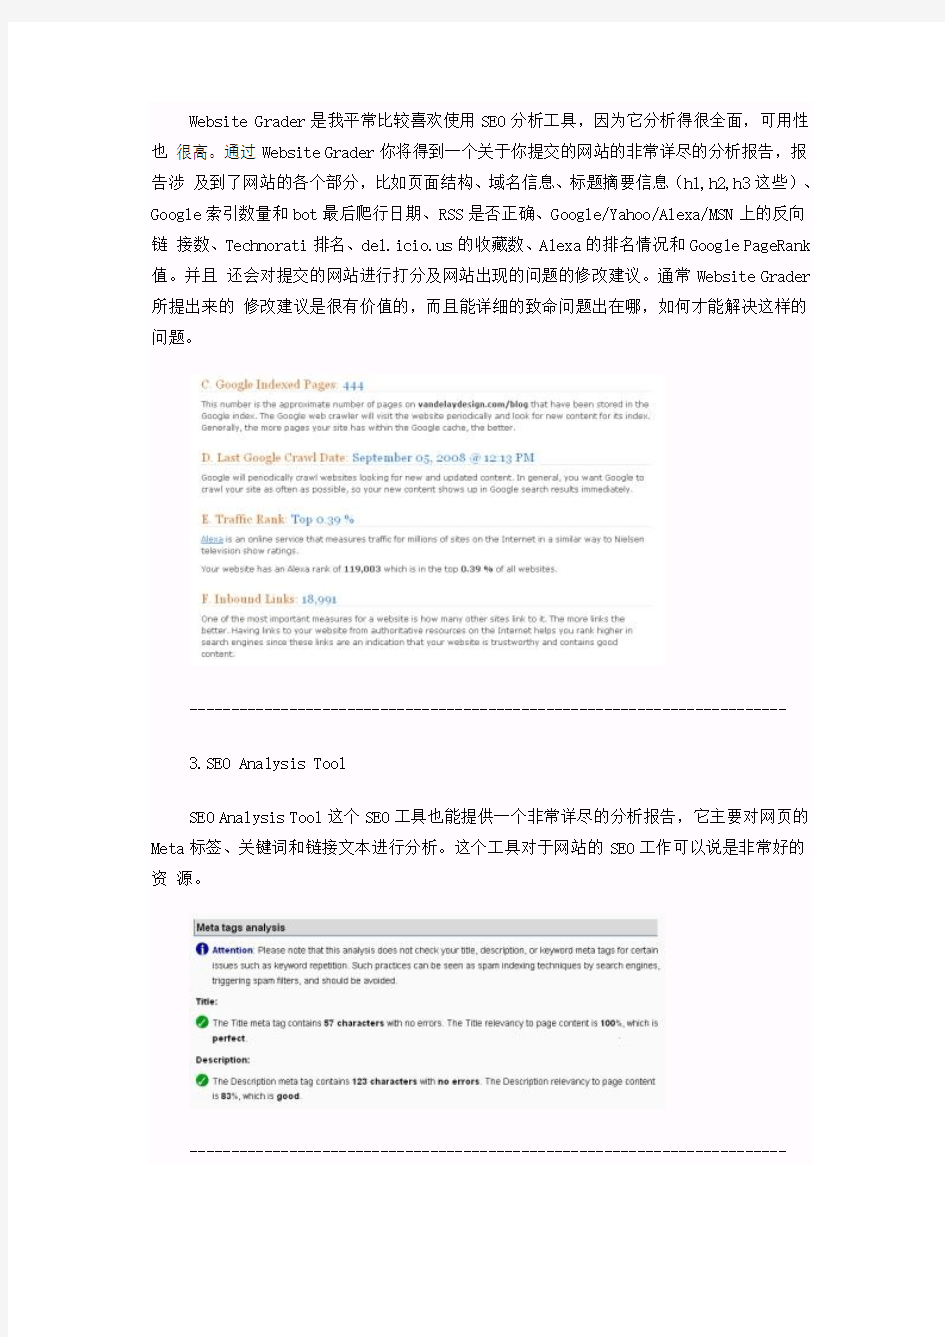 中国SEO--免费的20个SEO分析工具